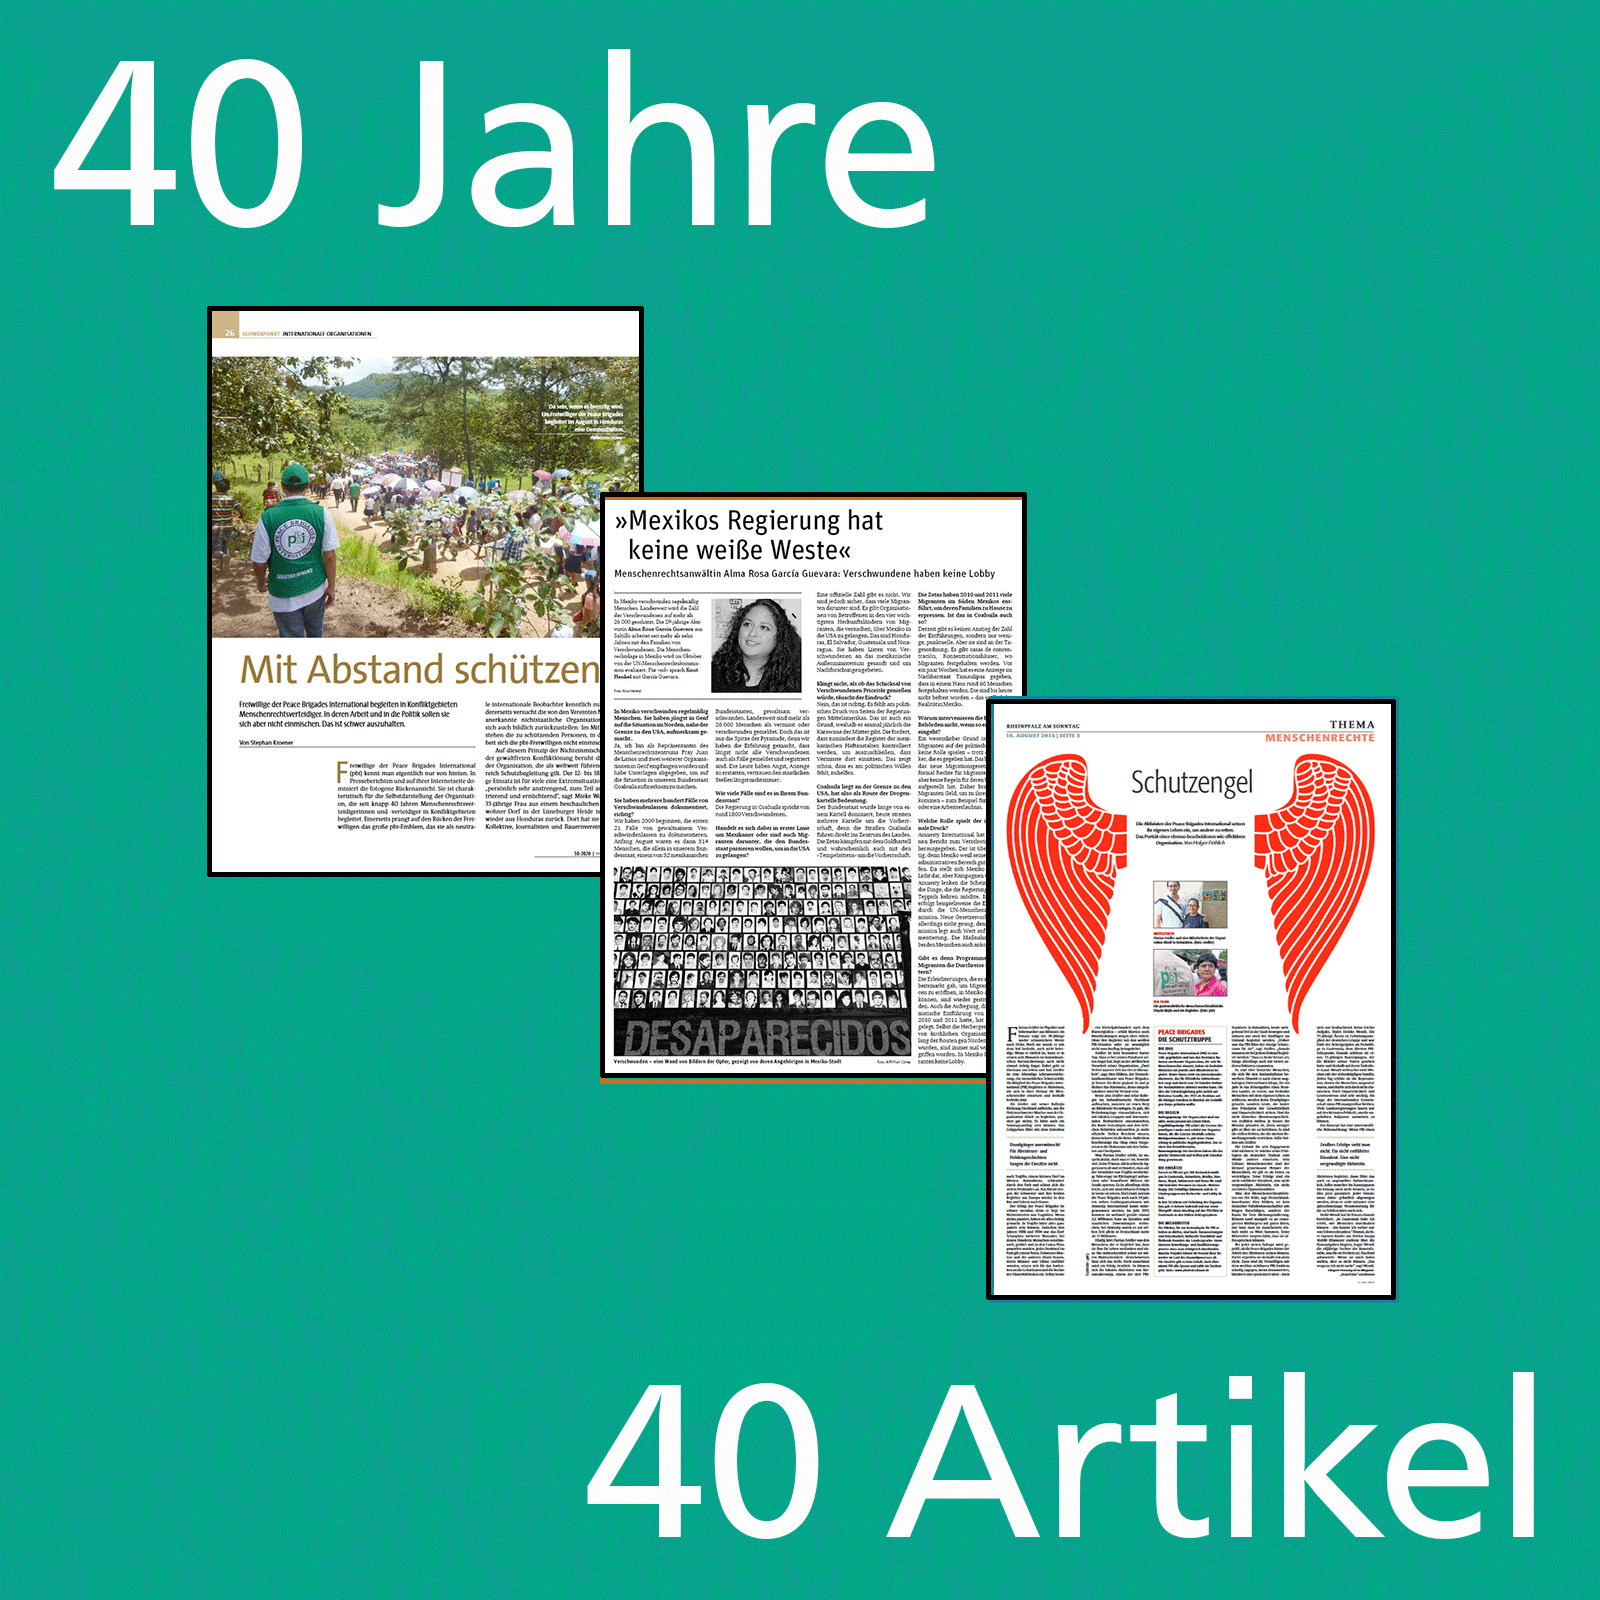 40 Jahre, 40 Artikel